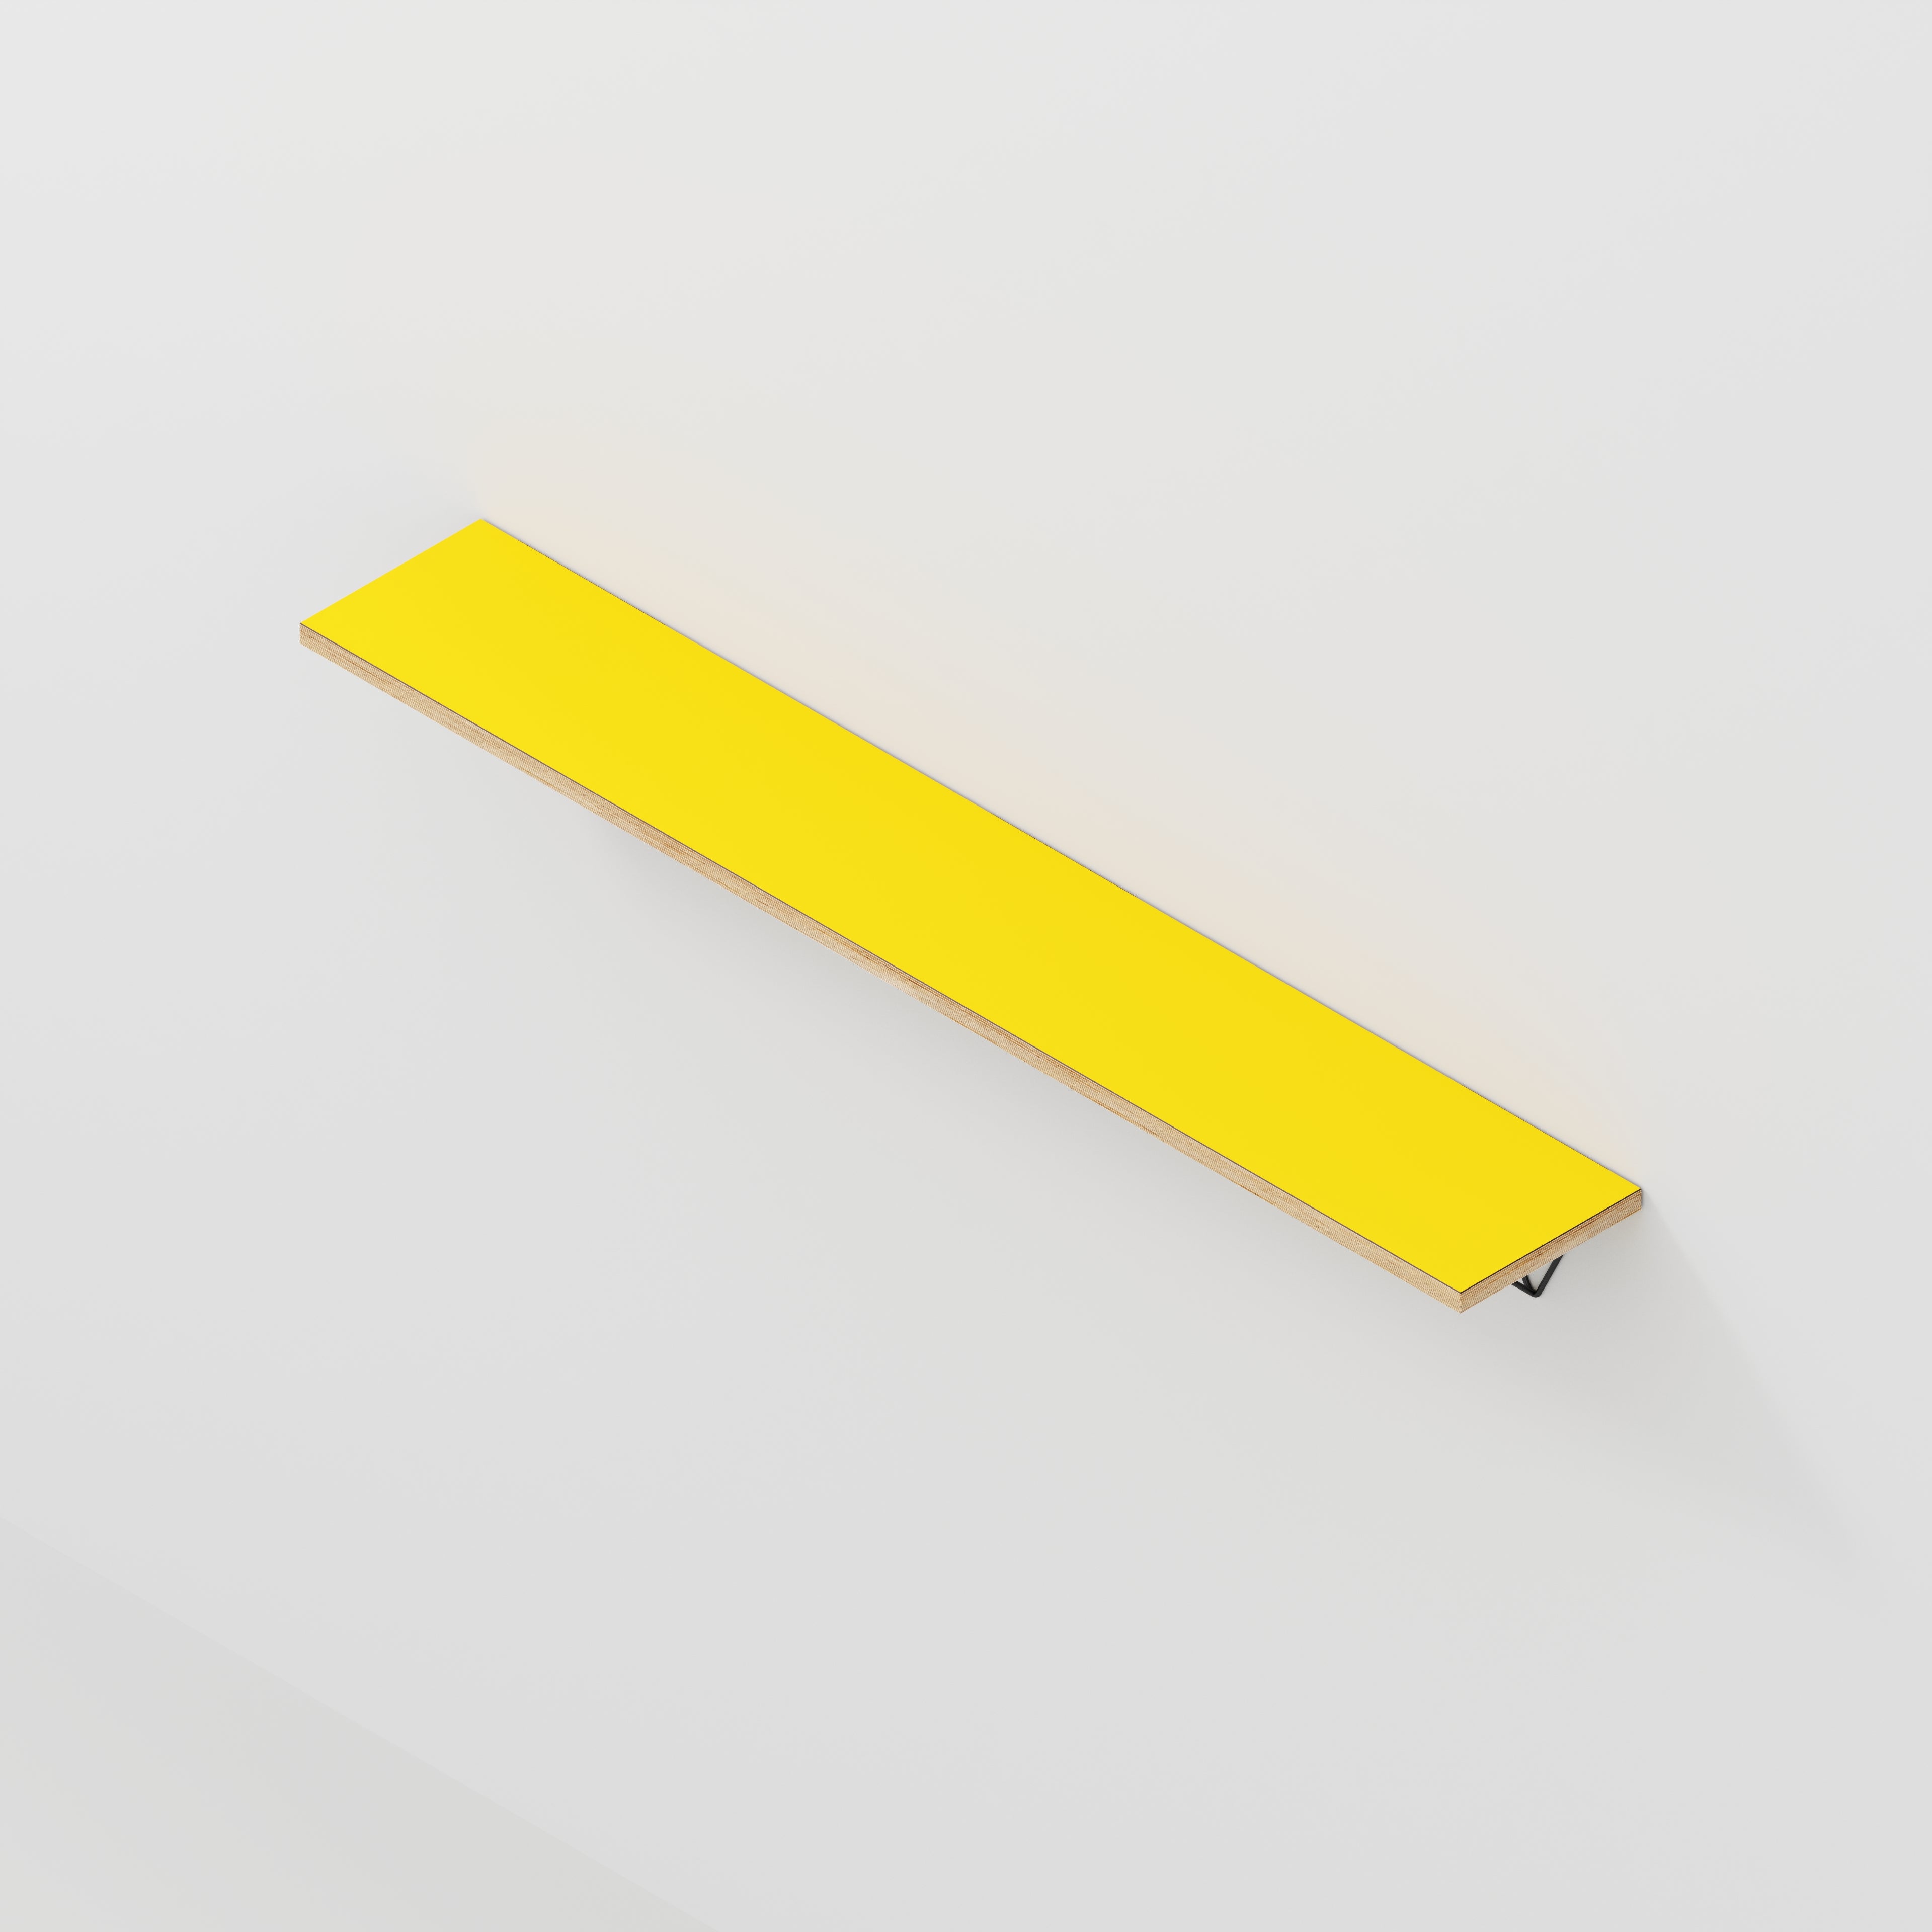 Wall Shelf with Prism Brackets - Formica Chrome Yellow - 1600(w) x 250(d)